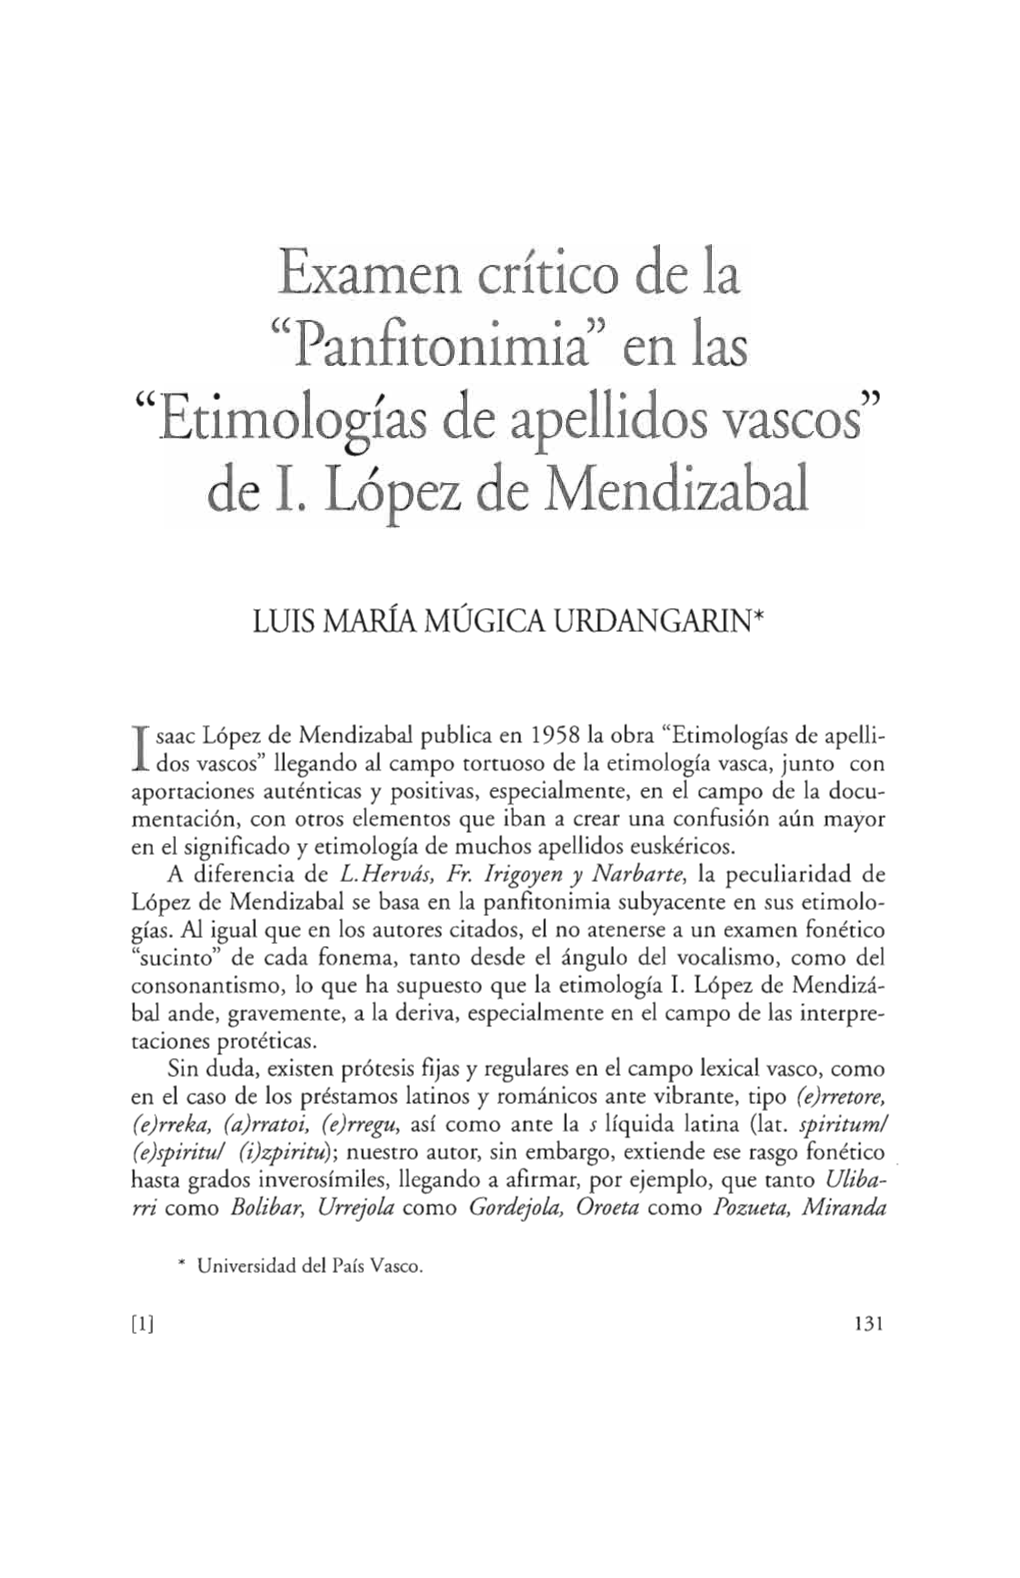 Examen Crítico De La "Panfitonimia En Las "Etimologías De Apellidos Vascos" De 1. López De Mendizabal